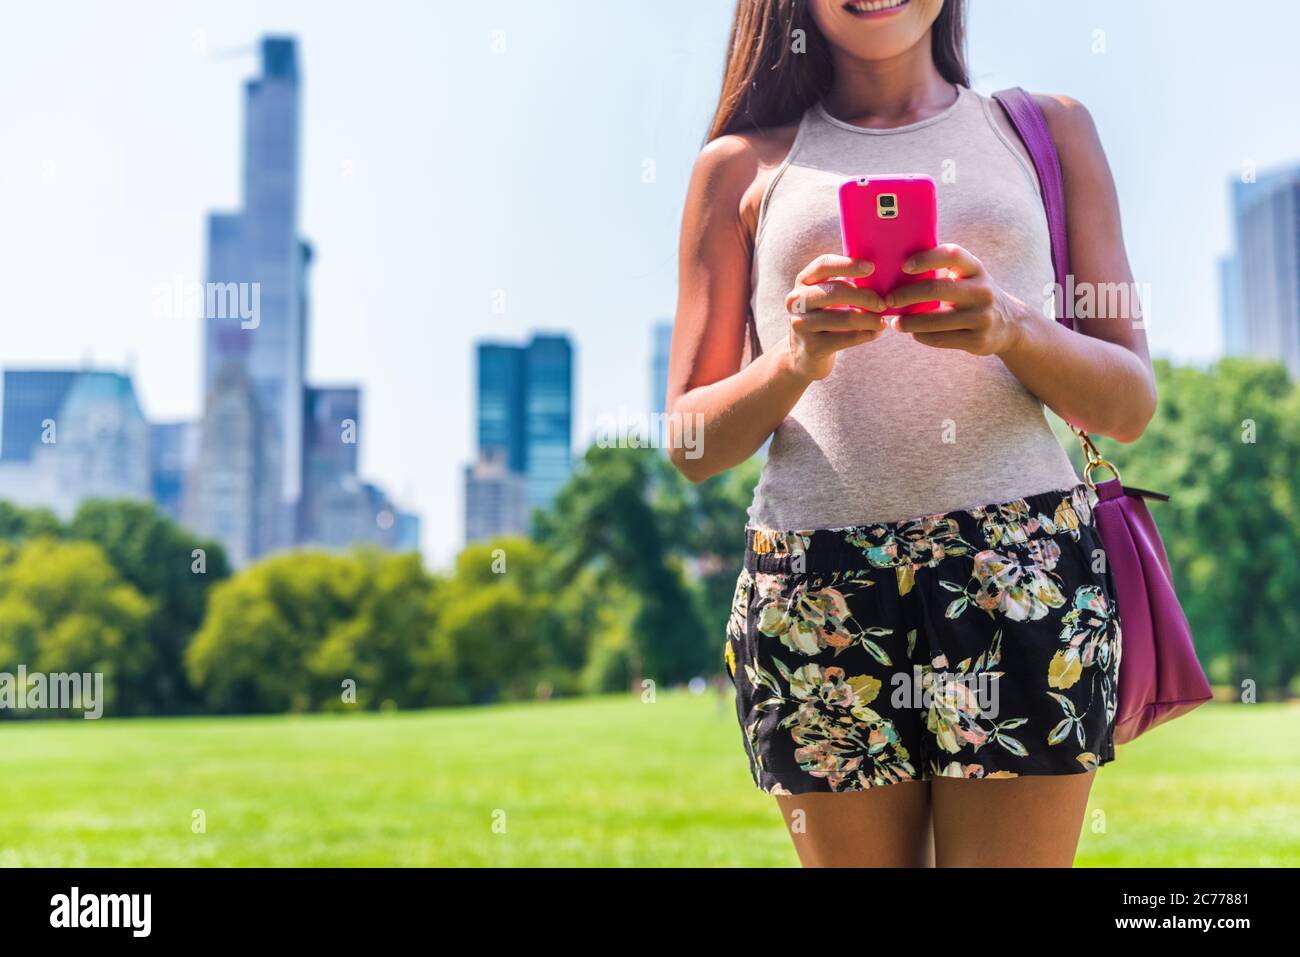 Urban Modern New York City lifestyle smartphone donna. Persona che invia SMS sul cellulare nel Central Park Meadow, New York. Vacanze estive Foto Stock